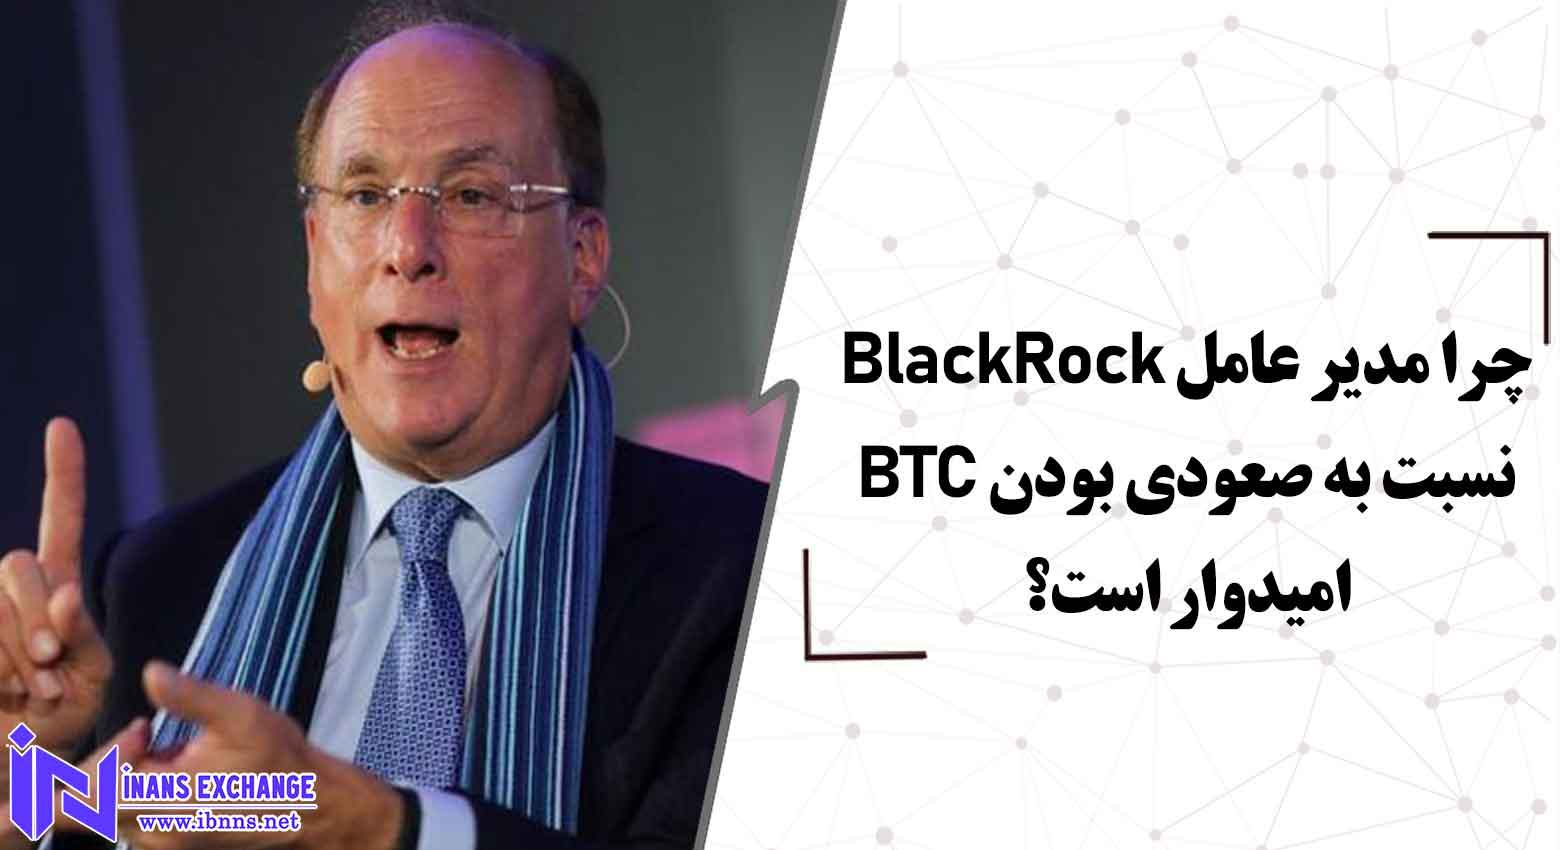  چرا مدیر عامل BlackRock نسبت به صعودی بودن BTC امیدوار است؟